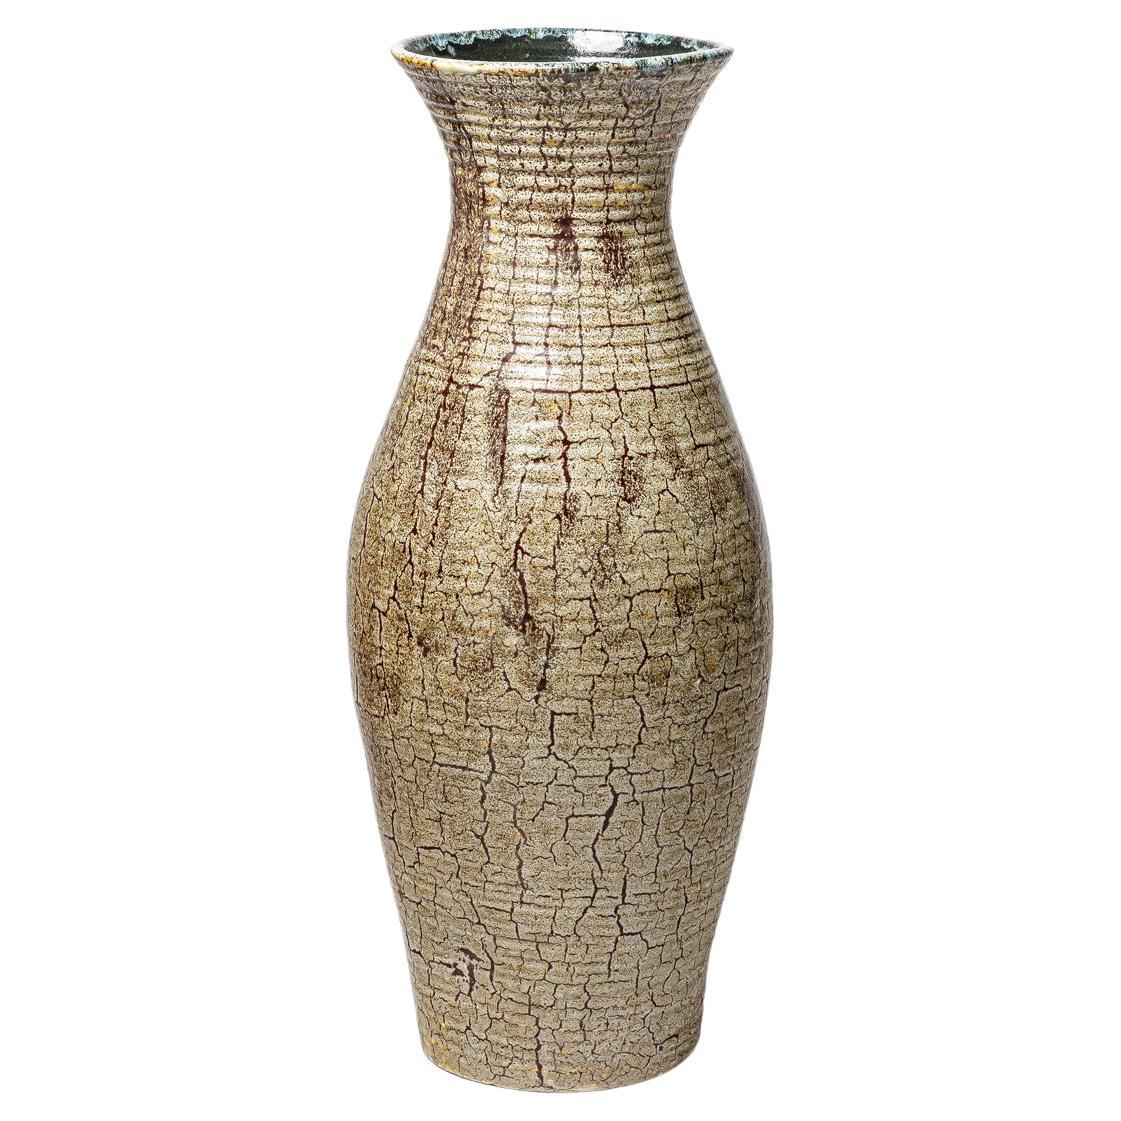  Vase en grès émaillé Brown par Accolay, vers 1960-1970.